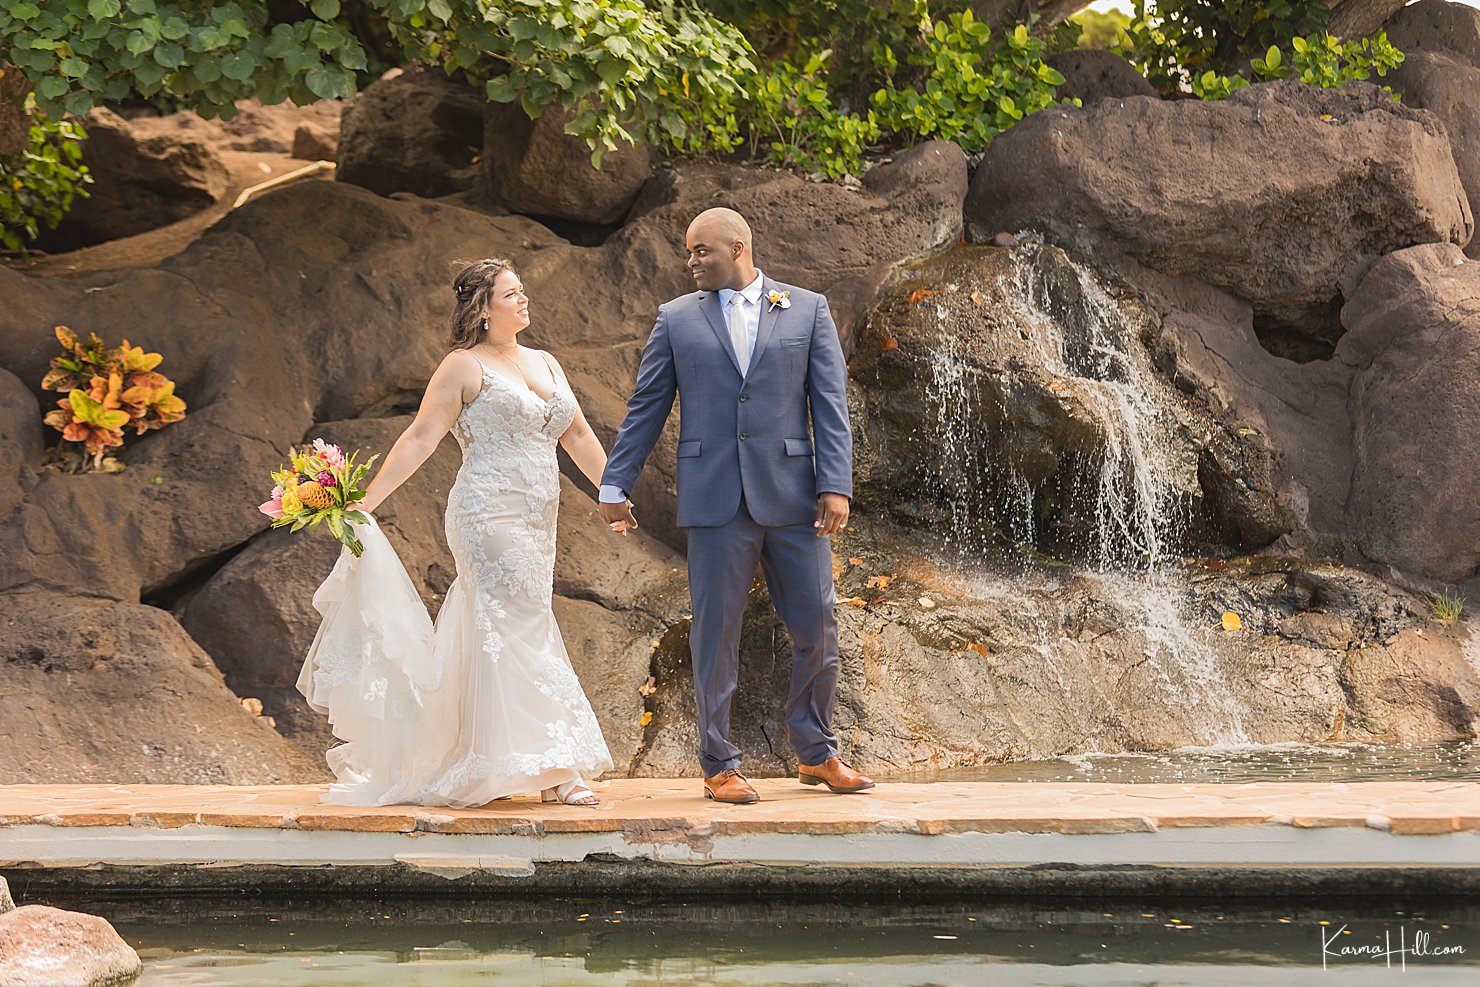 Wedding at the Maui Hyatt